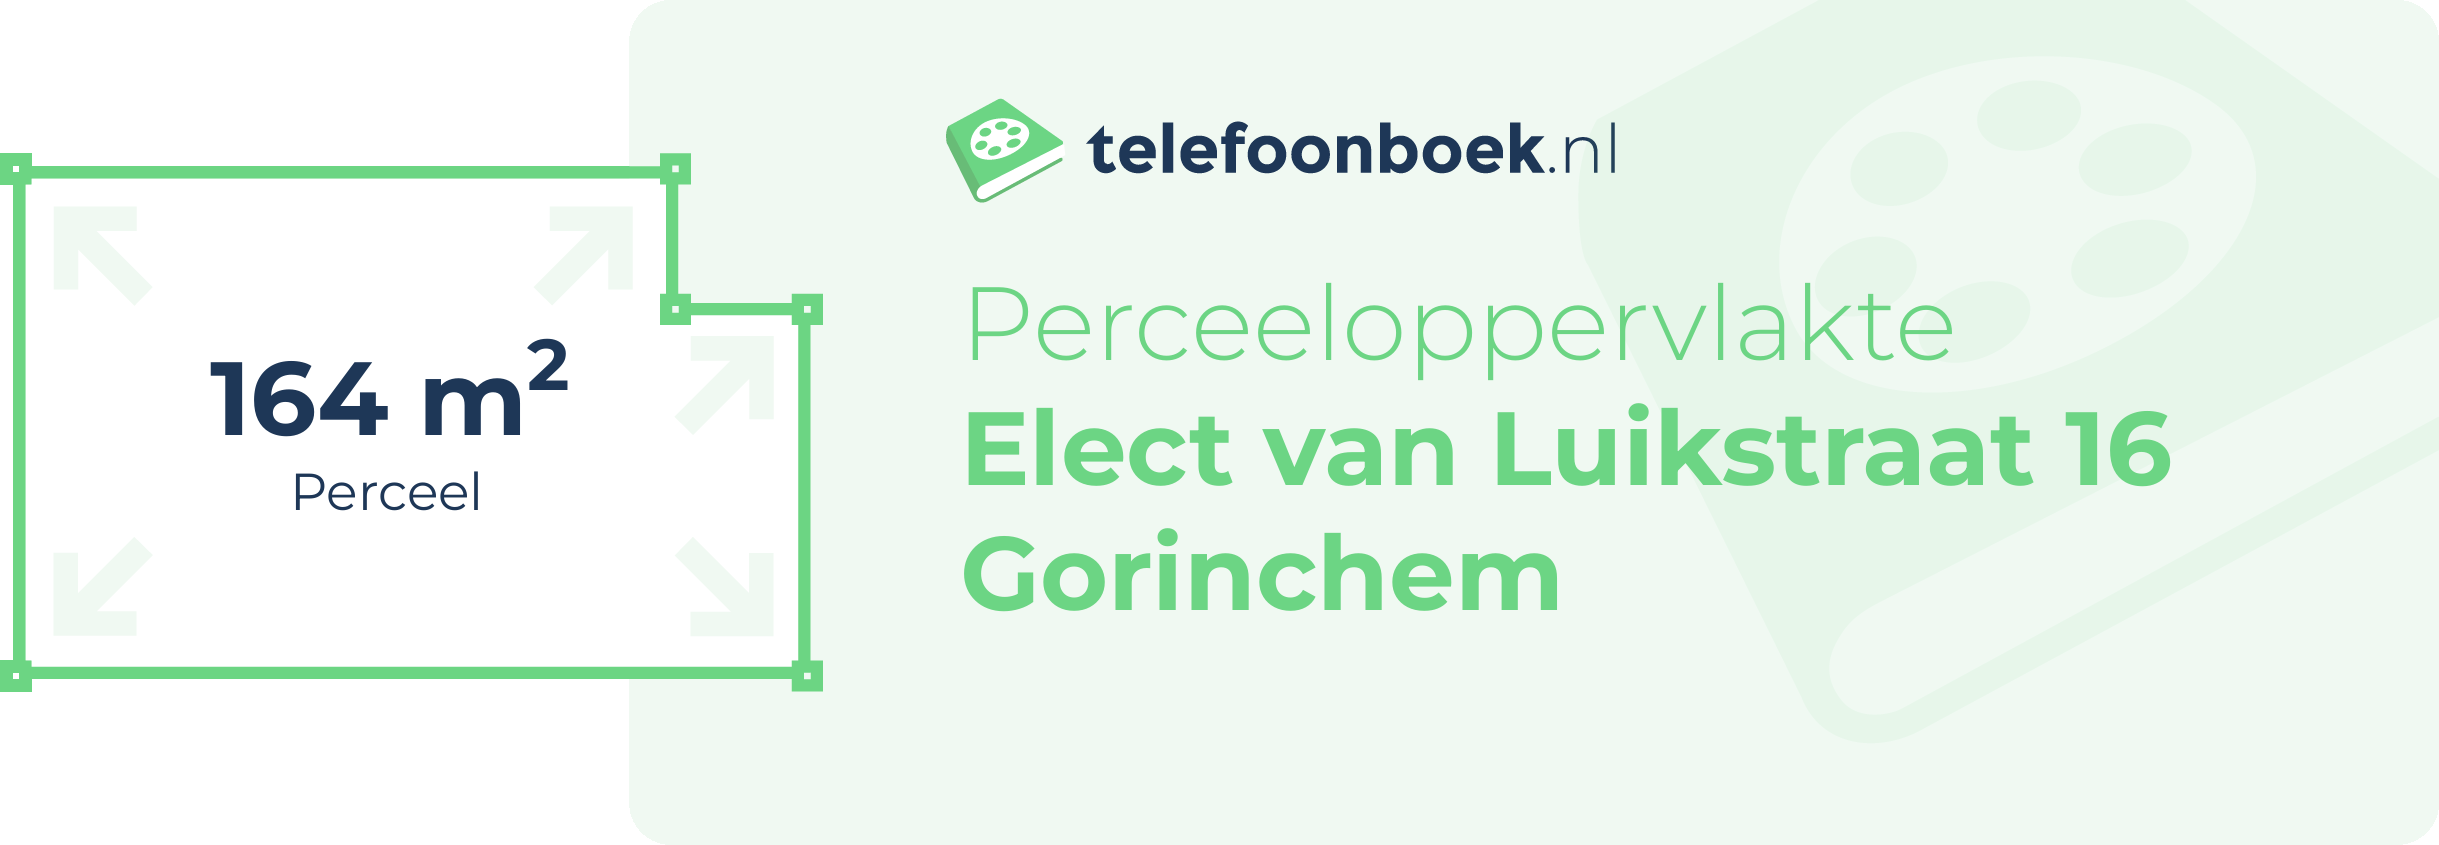 Perceeloppervlakte Elect Van Luikstraat 16 Gorinchem